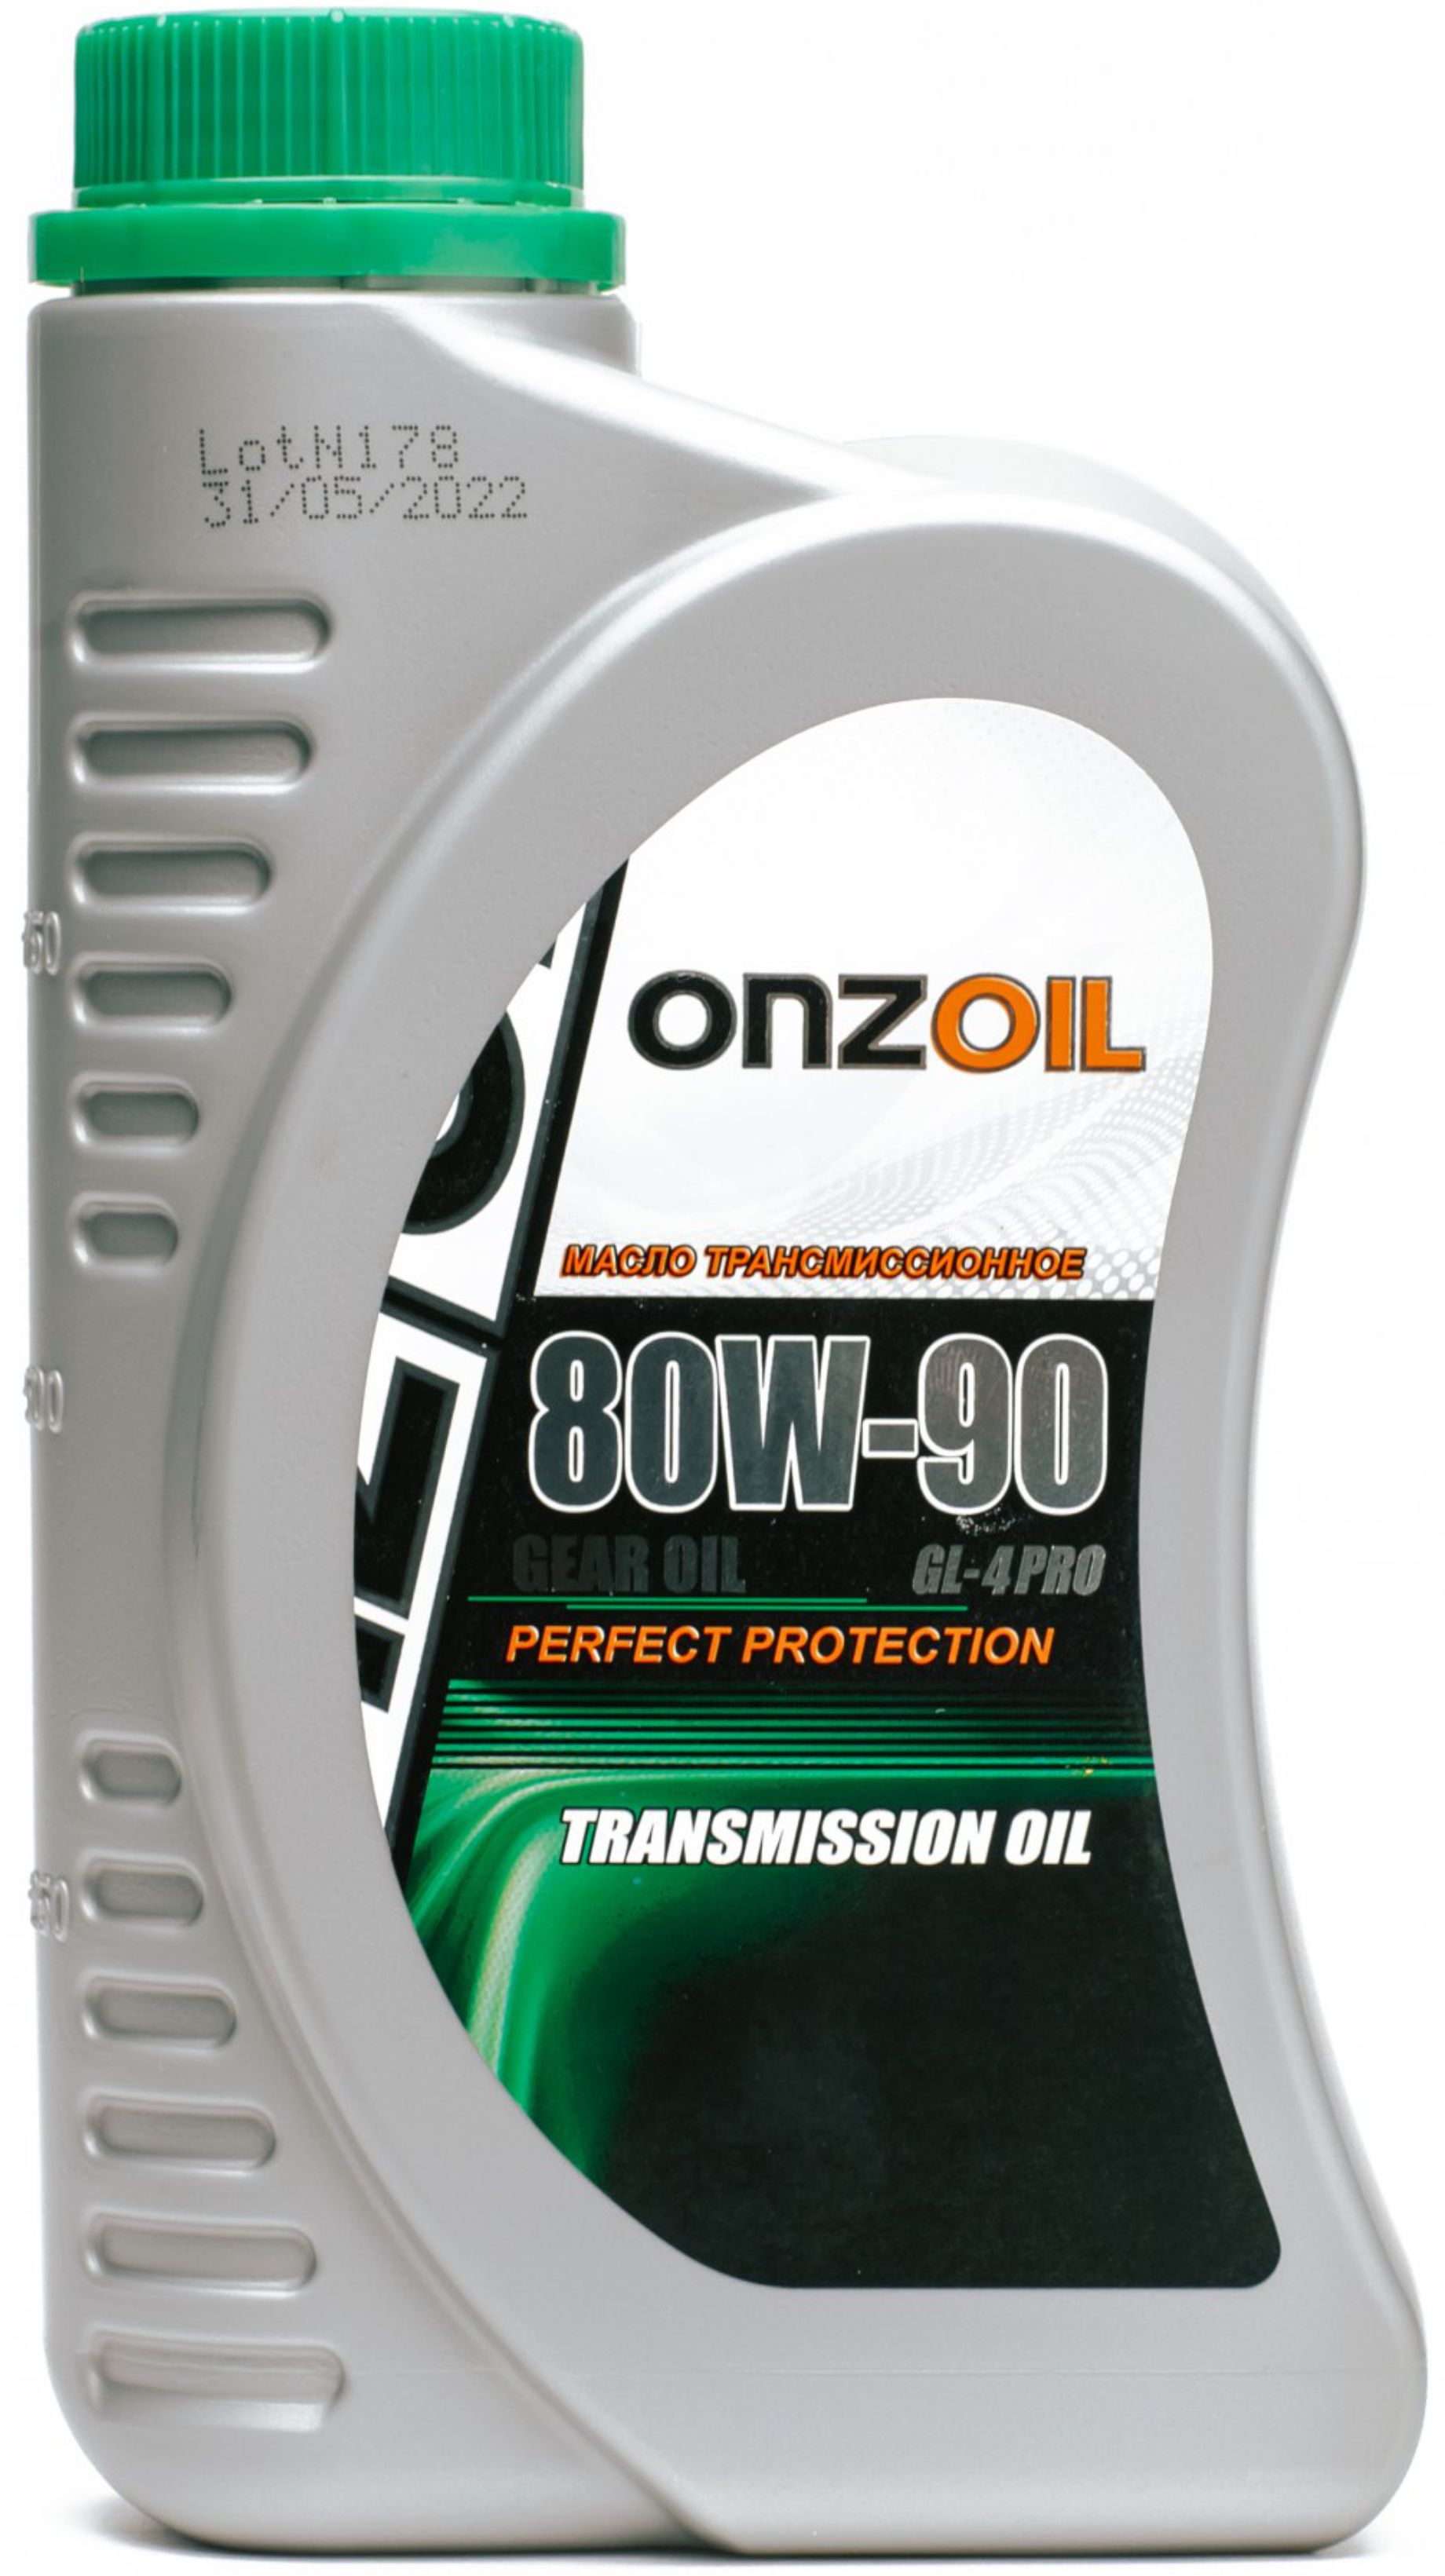 Масло трансмиссионное Onzoil Gear oil 80W-90 GL-4 Pro 900 мл, Масла трансмиссионные